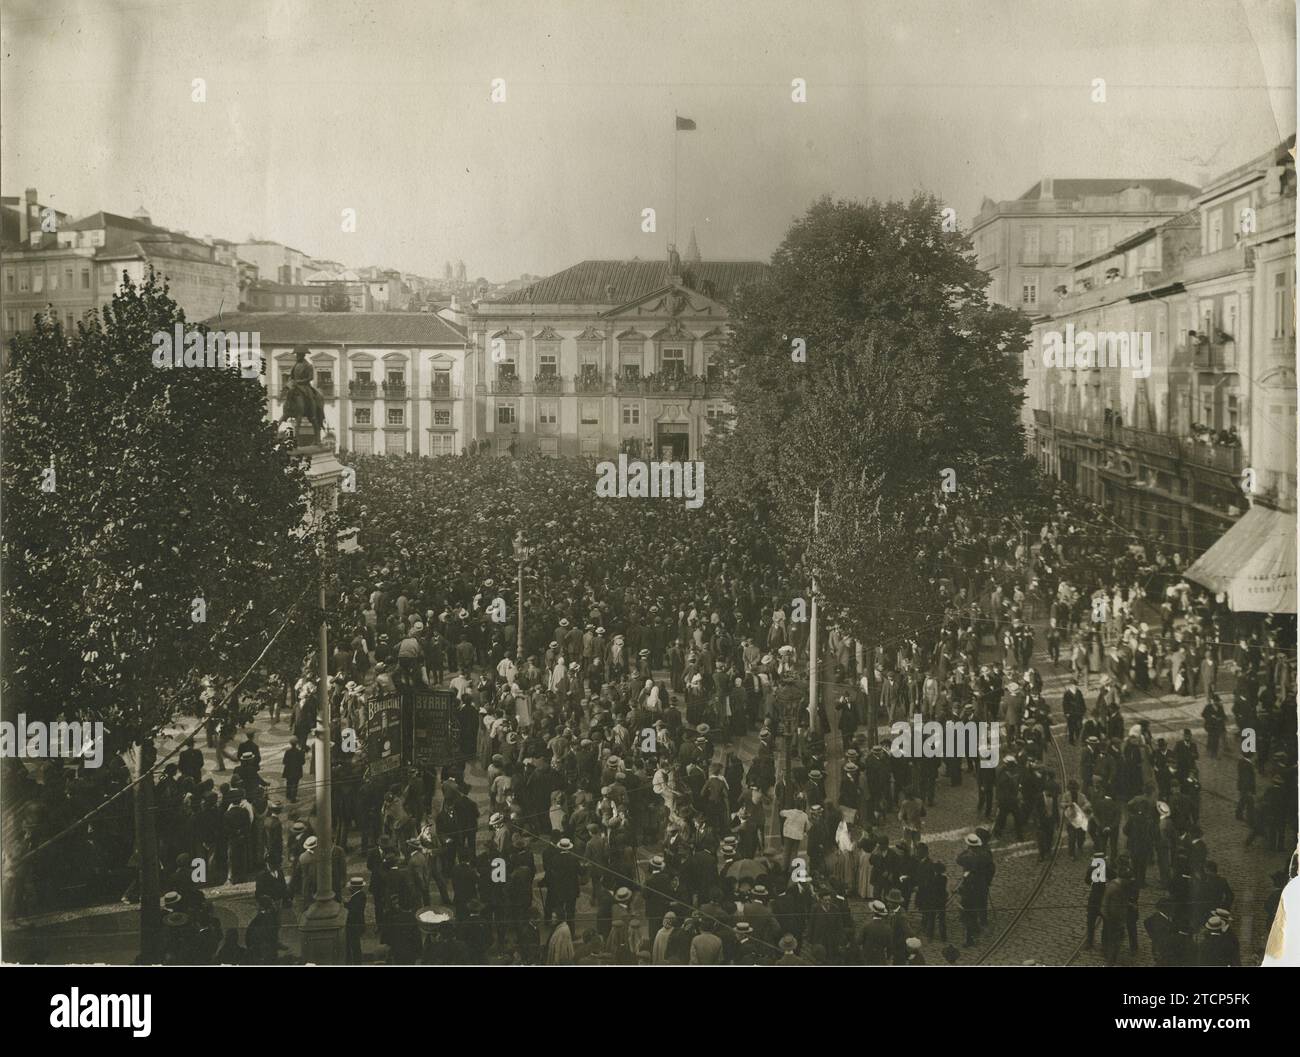 Anschluss. 10/06/1910. Proklamation der Portugiesischen Republik auf der Plaza de Dom Pedro IV am 6. Oktober 1910 um 16:00 Uhr in Porto. Quelle: Album/Archivo ABC/Alvao Stockfoto